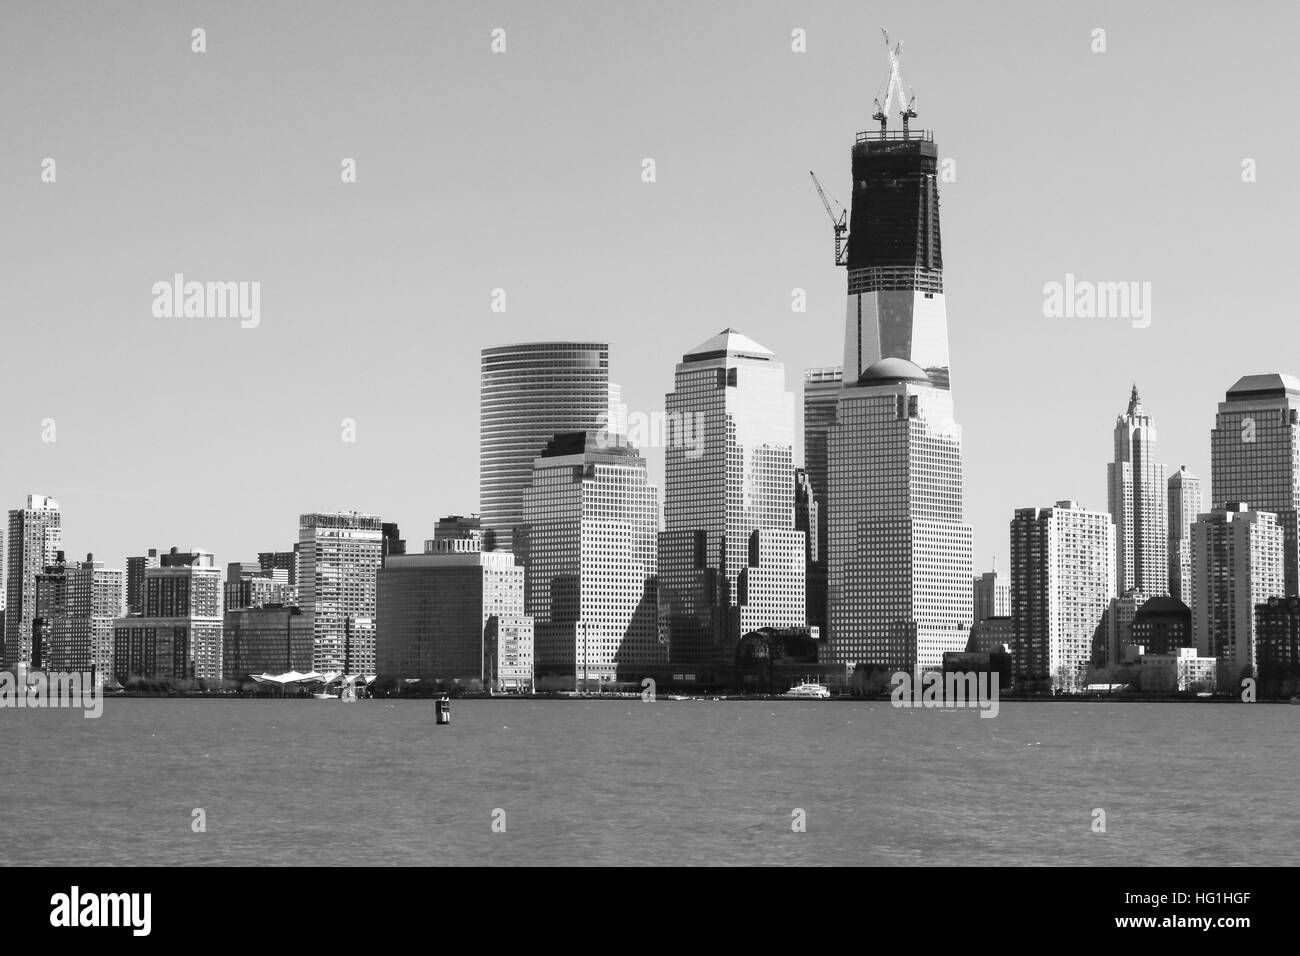 Una vista della parte inferiore di Manhattan nel 2012 con la Freedom Tower in costruzione. Foto scattata nel marzo 2012. Foto Stock